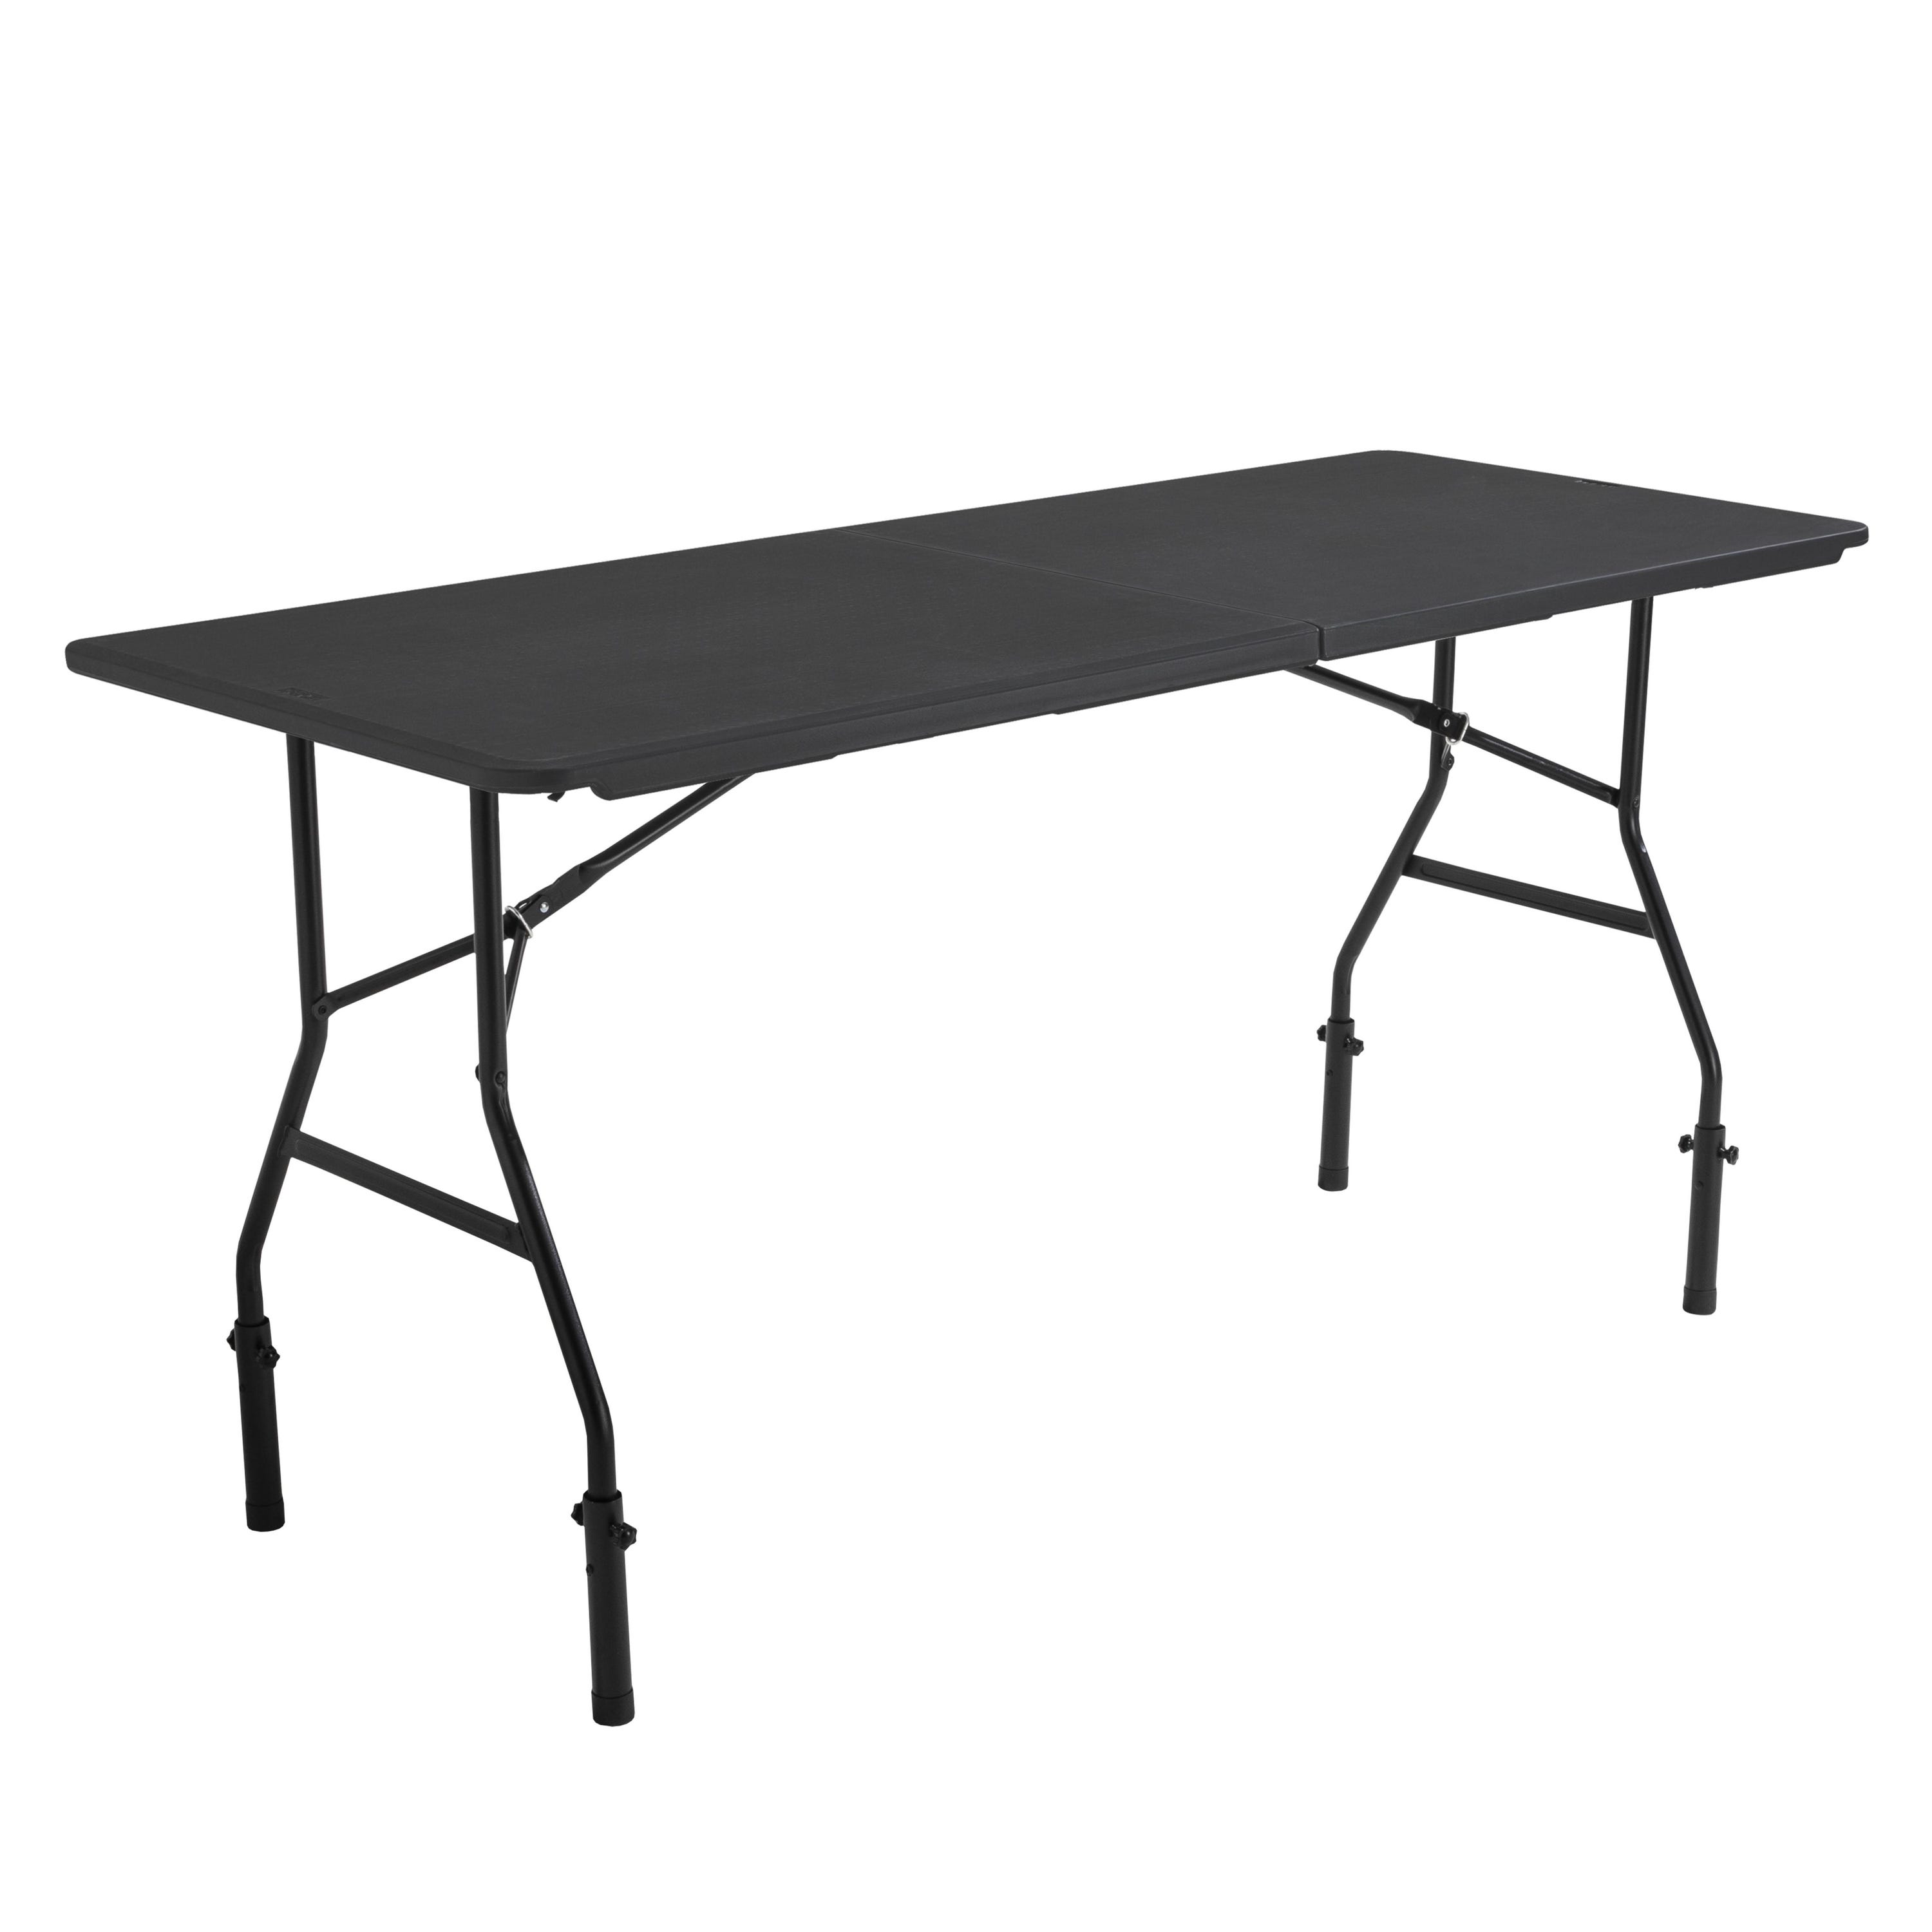 Lot de 10 tables pliantes noires 180 cm en PEHD et acier